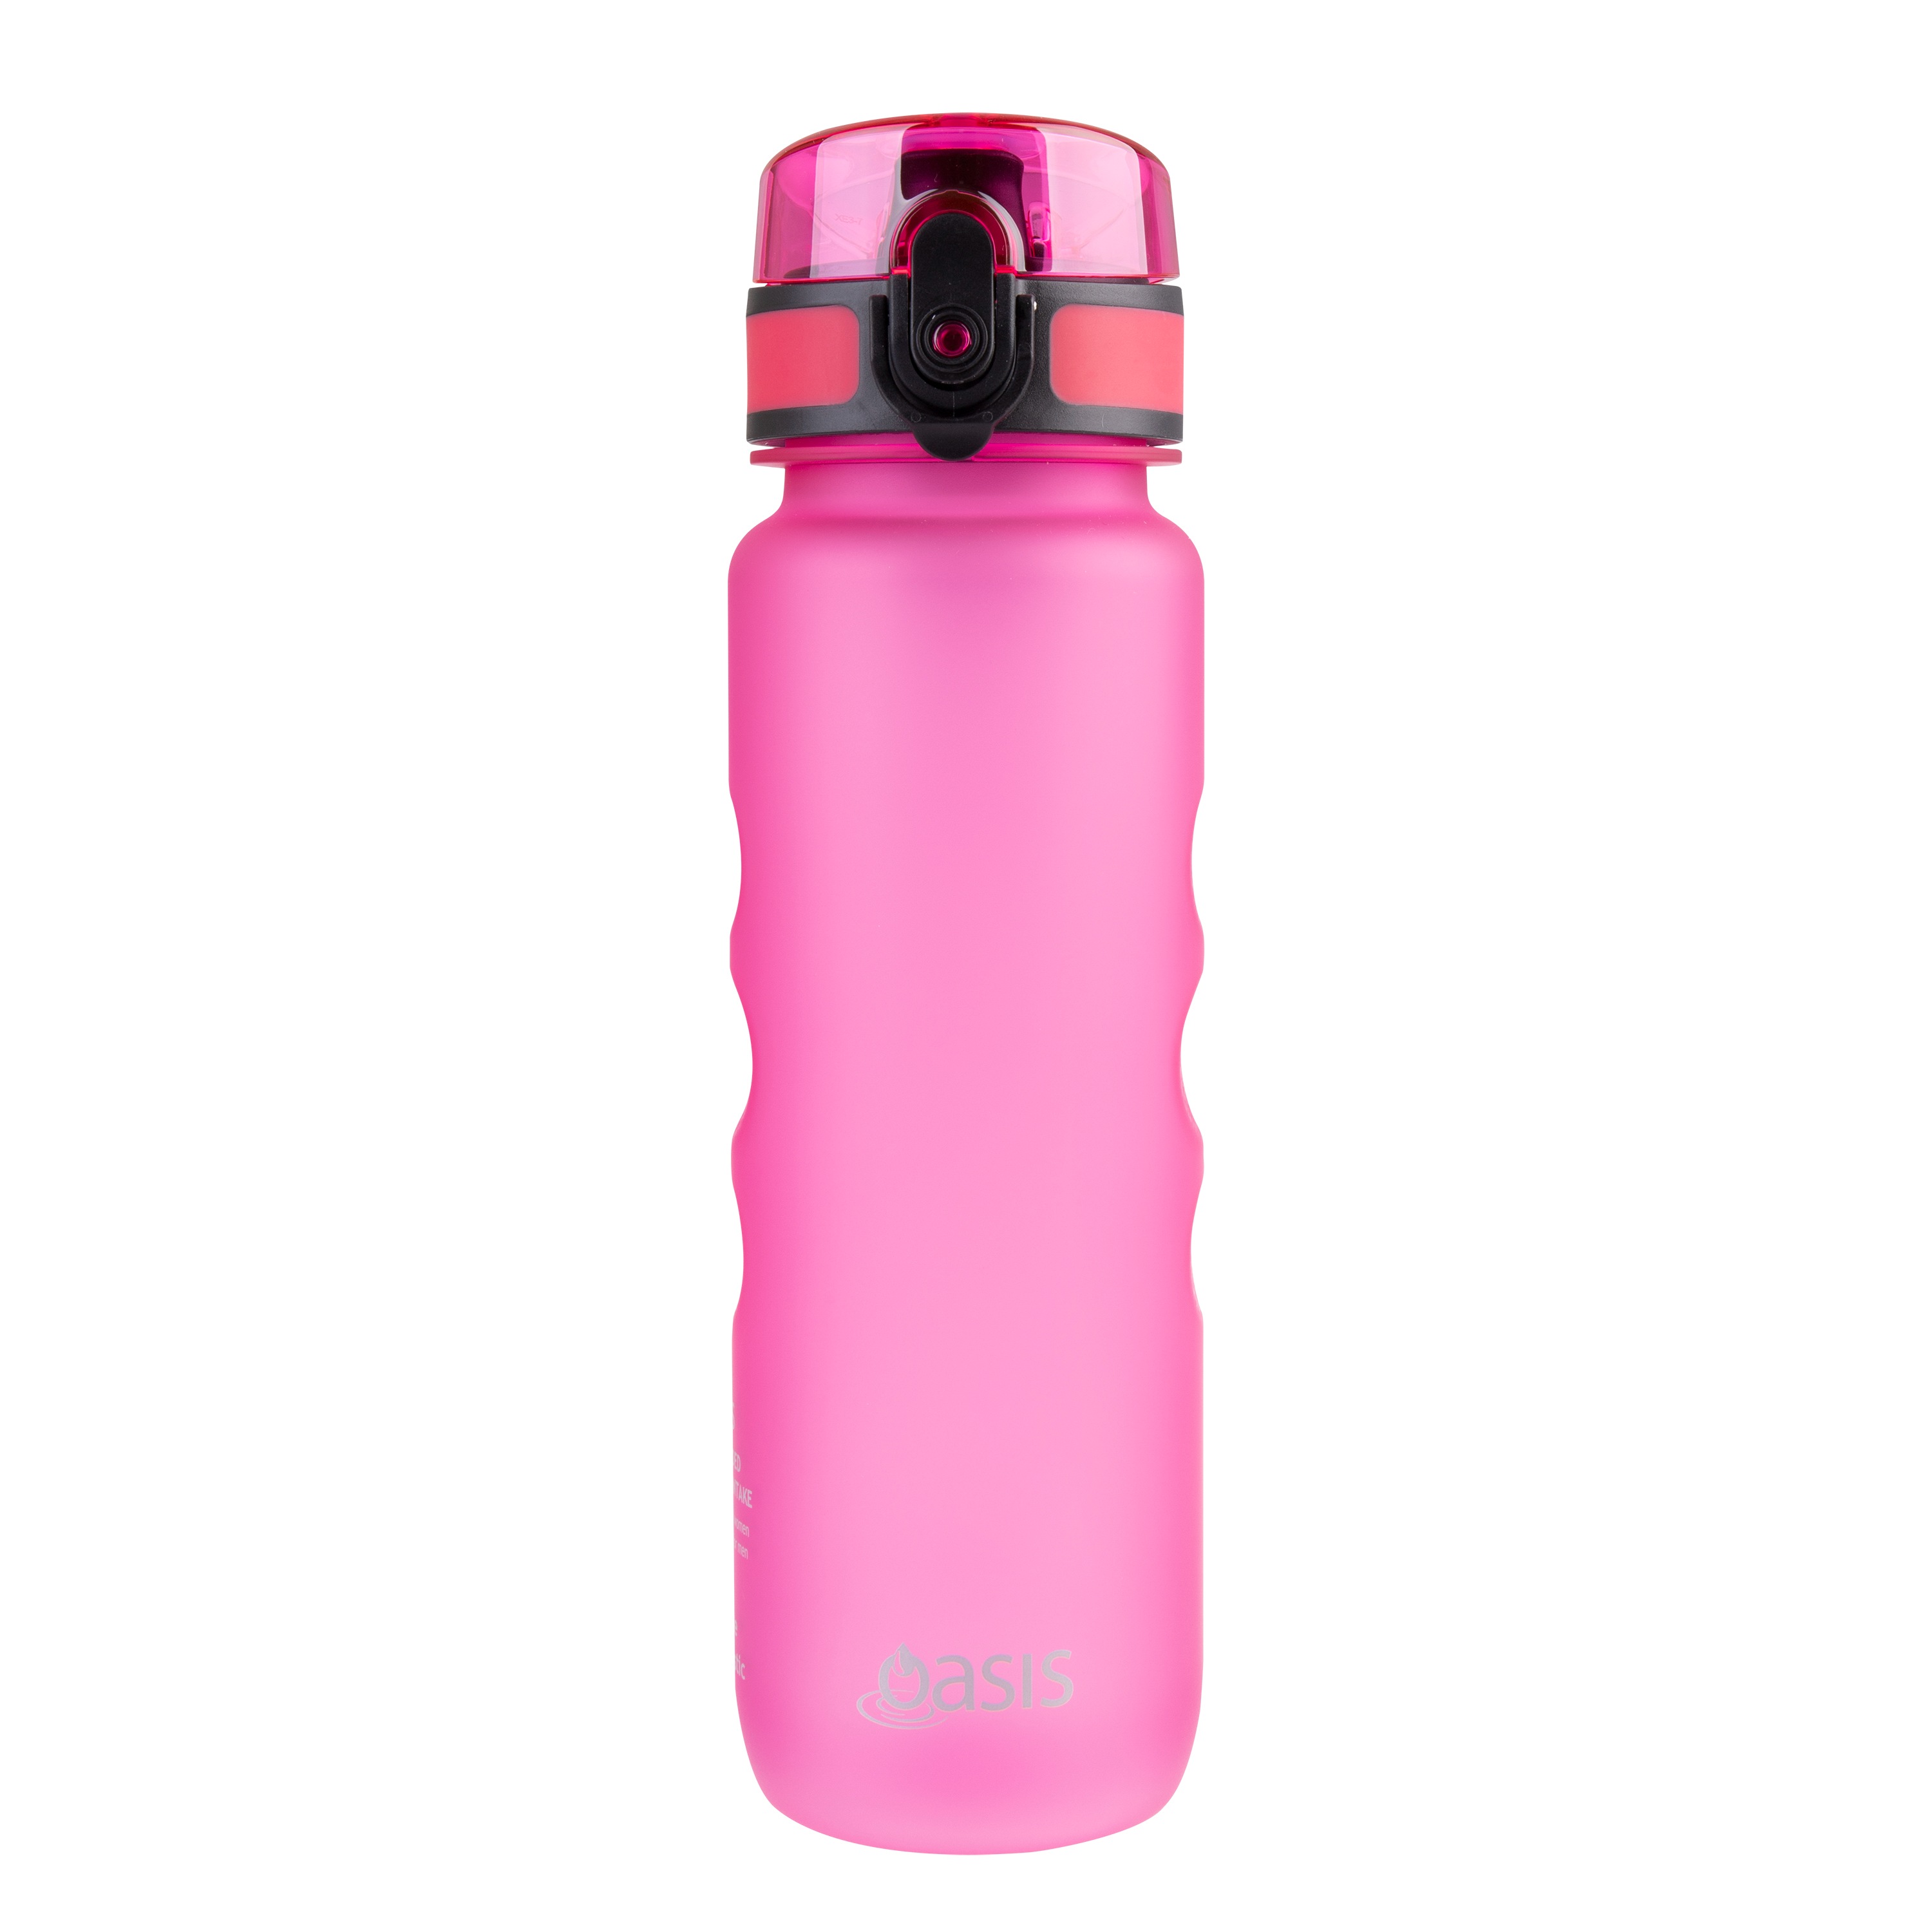 Oasis Tritan Sports Bottle 550ml Pink